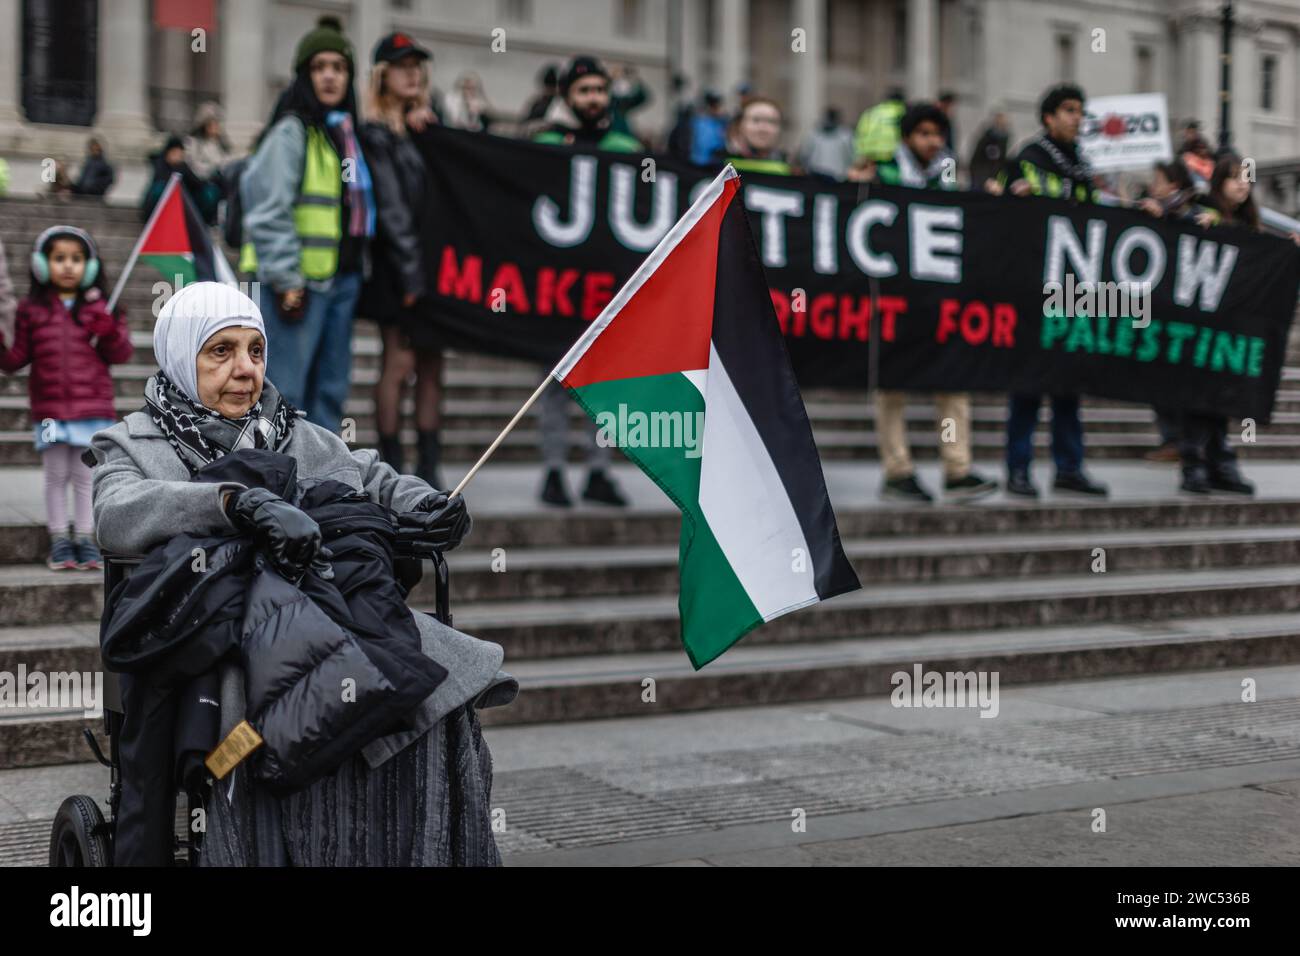 Eine alte Dame im Rollstuhl protestiert vor einem riesigen Banner "GERECHTIGKEIT macht es JETZT richtig für Palästina" auf dem Trafalgar Square. Stockfoto